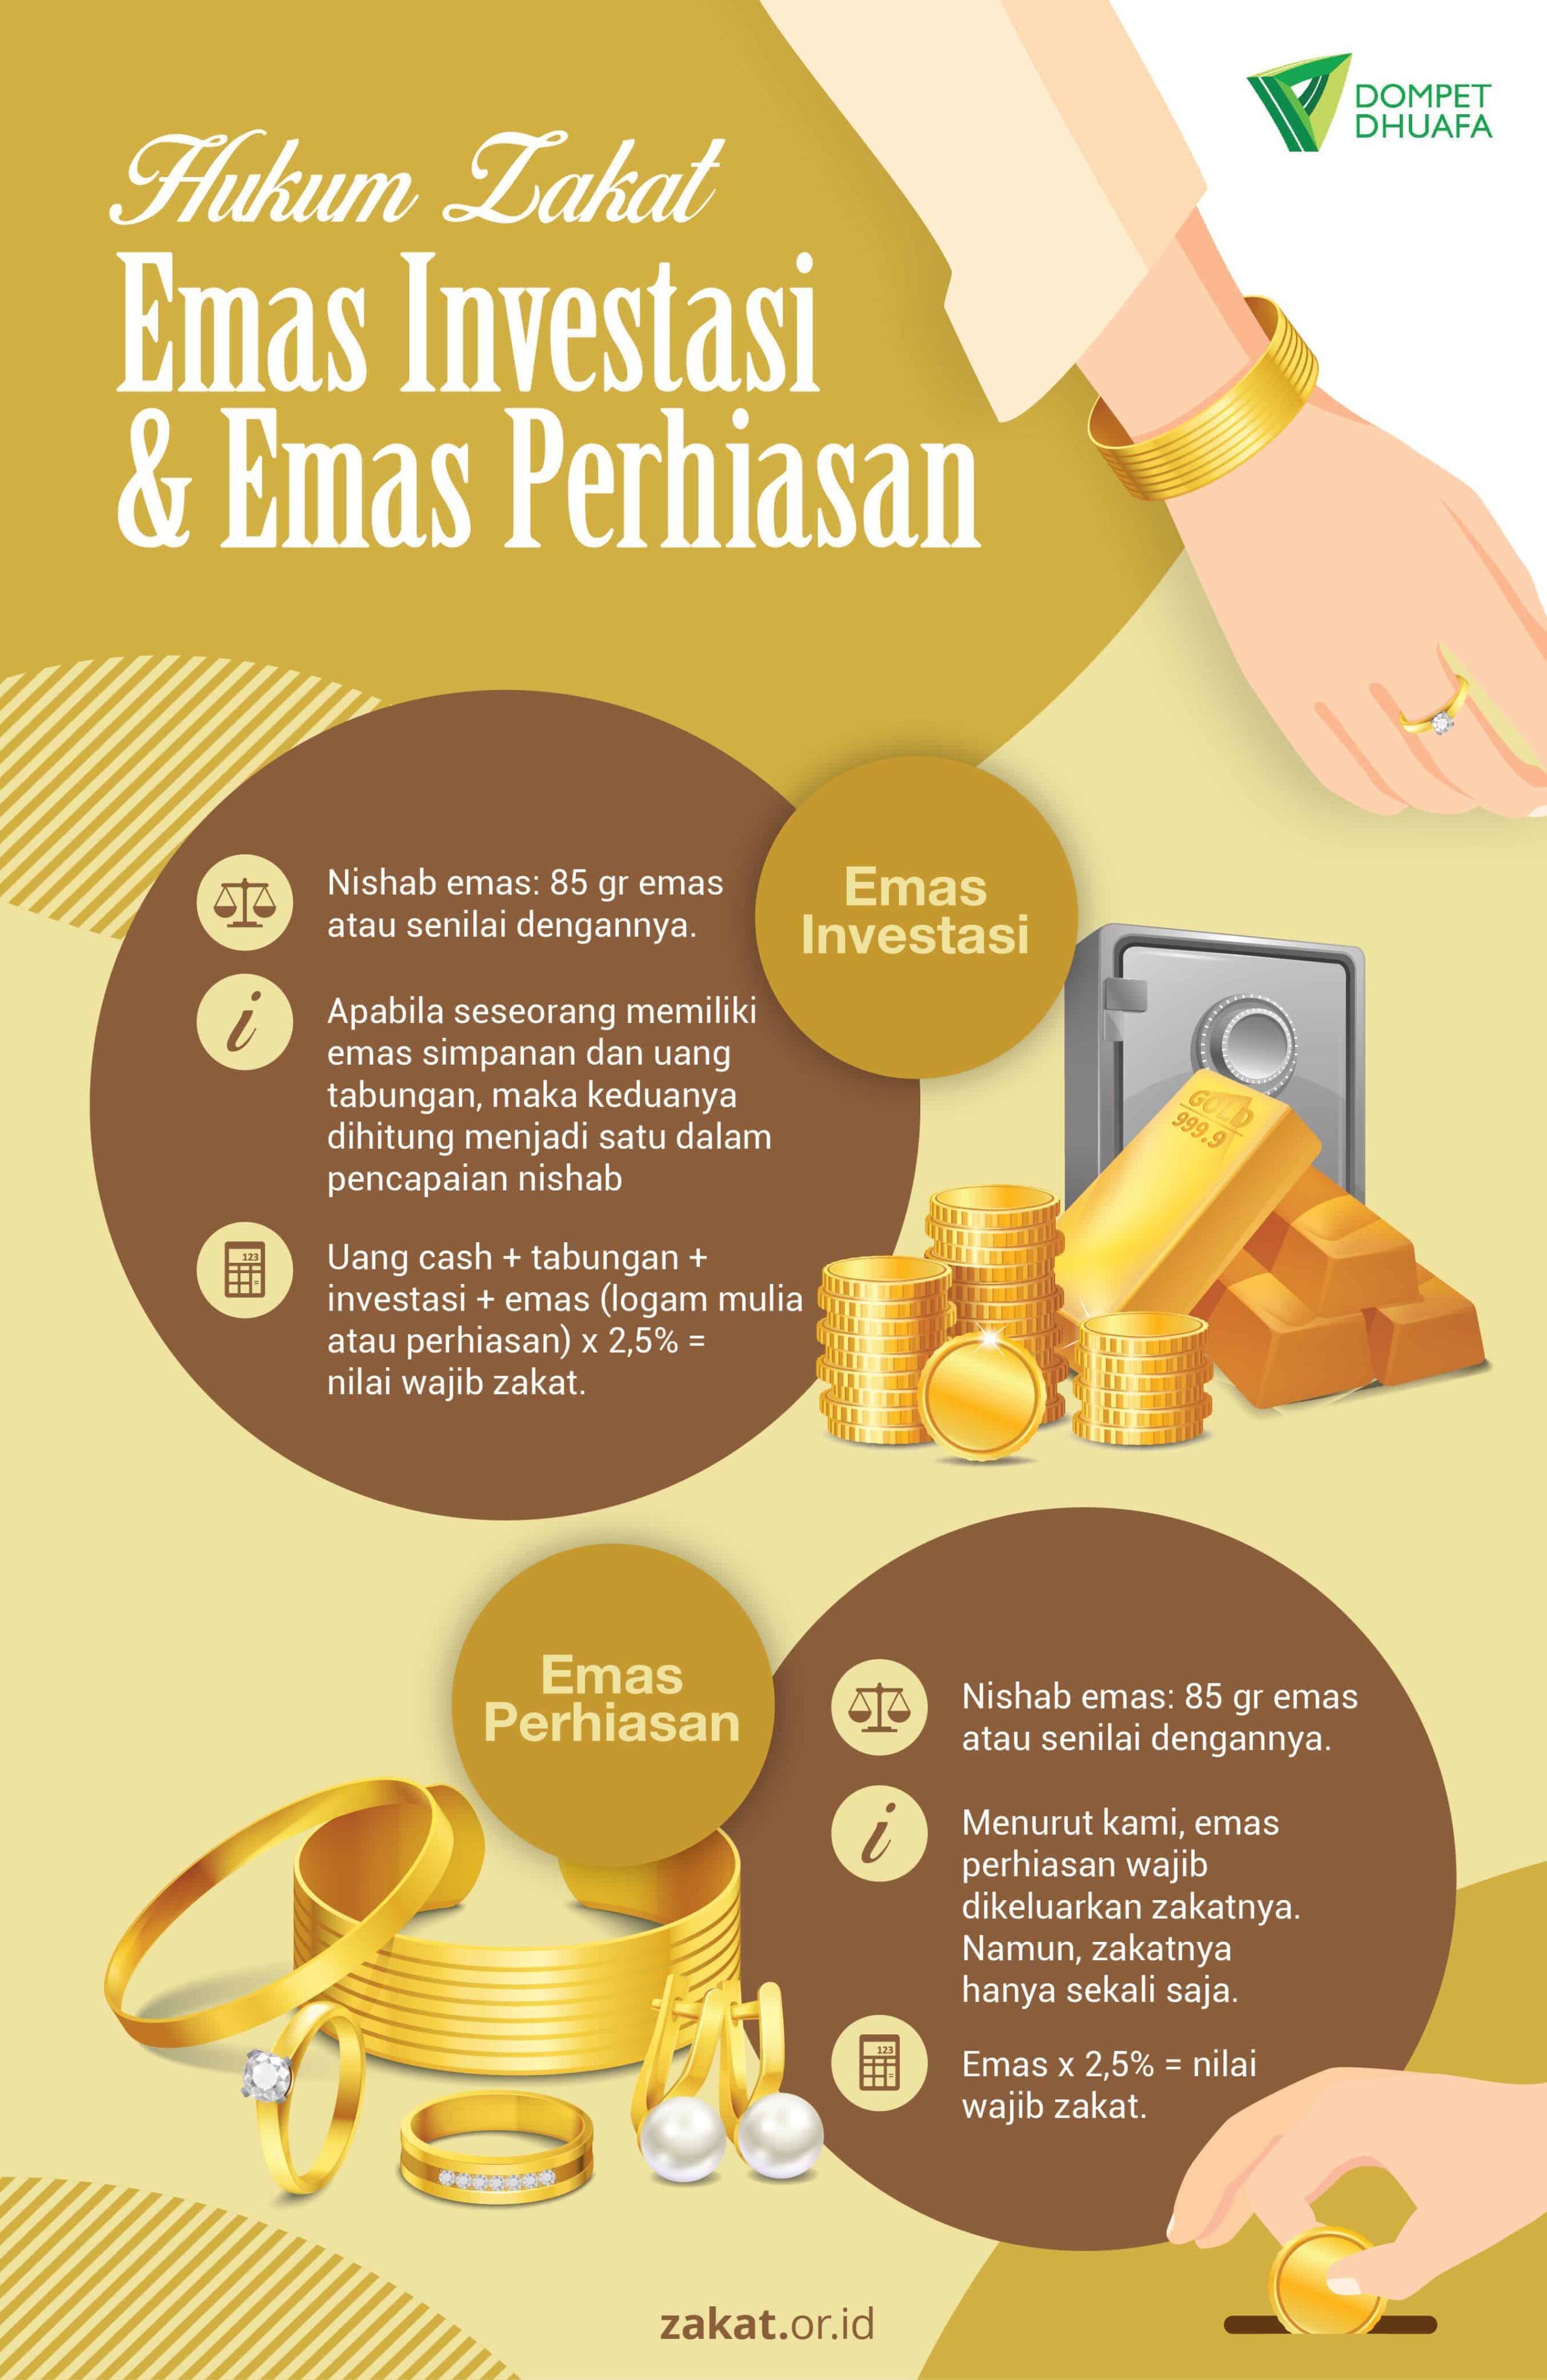 Hukum Zakat Emas Perhiasan & Emas Investasi Lembaga Amil